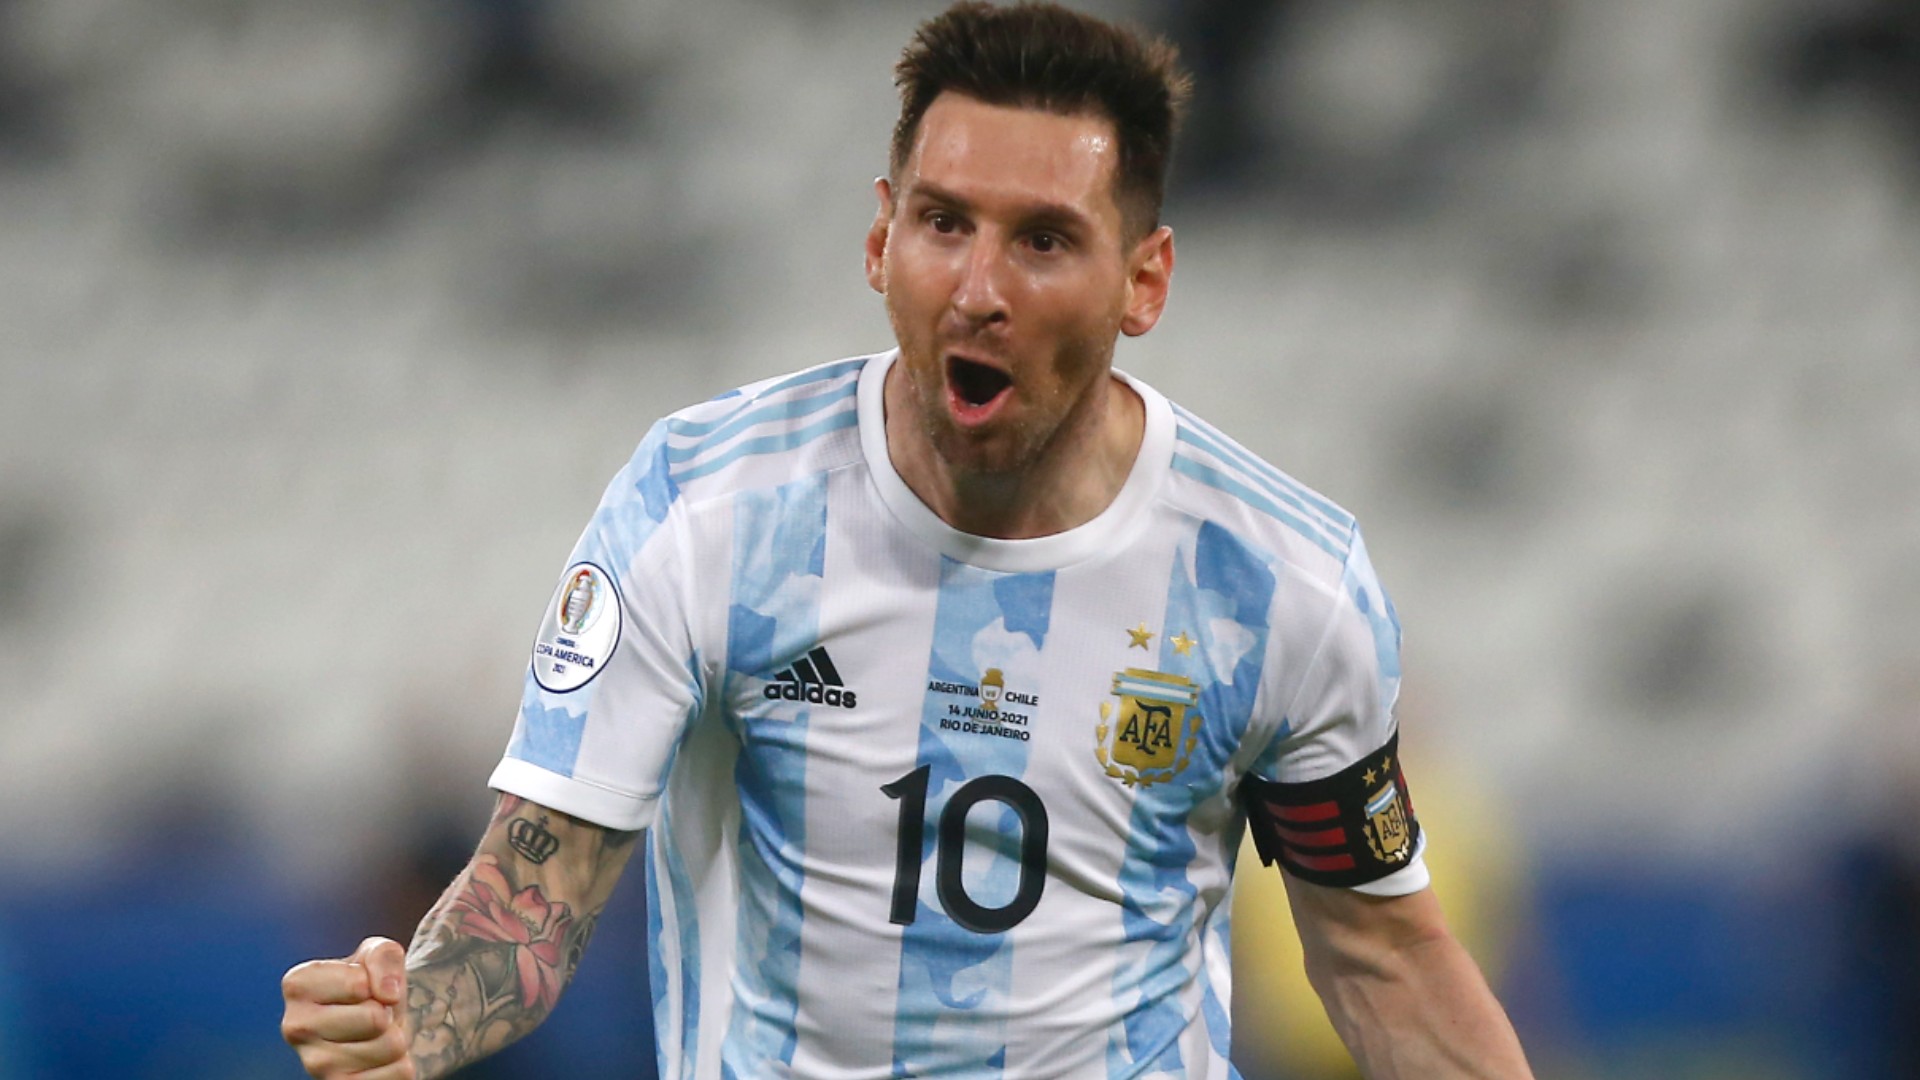 Hình nền Messi: Vẻ đẹp hoàn hảo của Messi không chỉ nằm ở kỹ thuật điêu luyện mà còn ở tấm lòng nhiệt huyết và khí chất vĩ đại. Cùng xem các hình nền thú vị với hình ảnh siêu sao người Argentina này để cảm nhận sự tinh tế và quyến rũ của Messi.